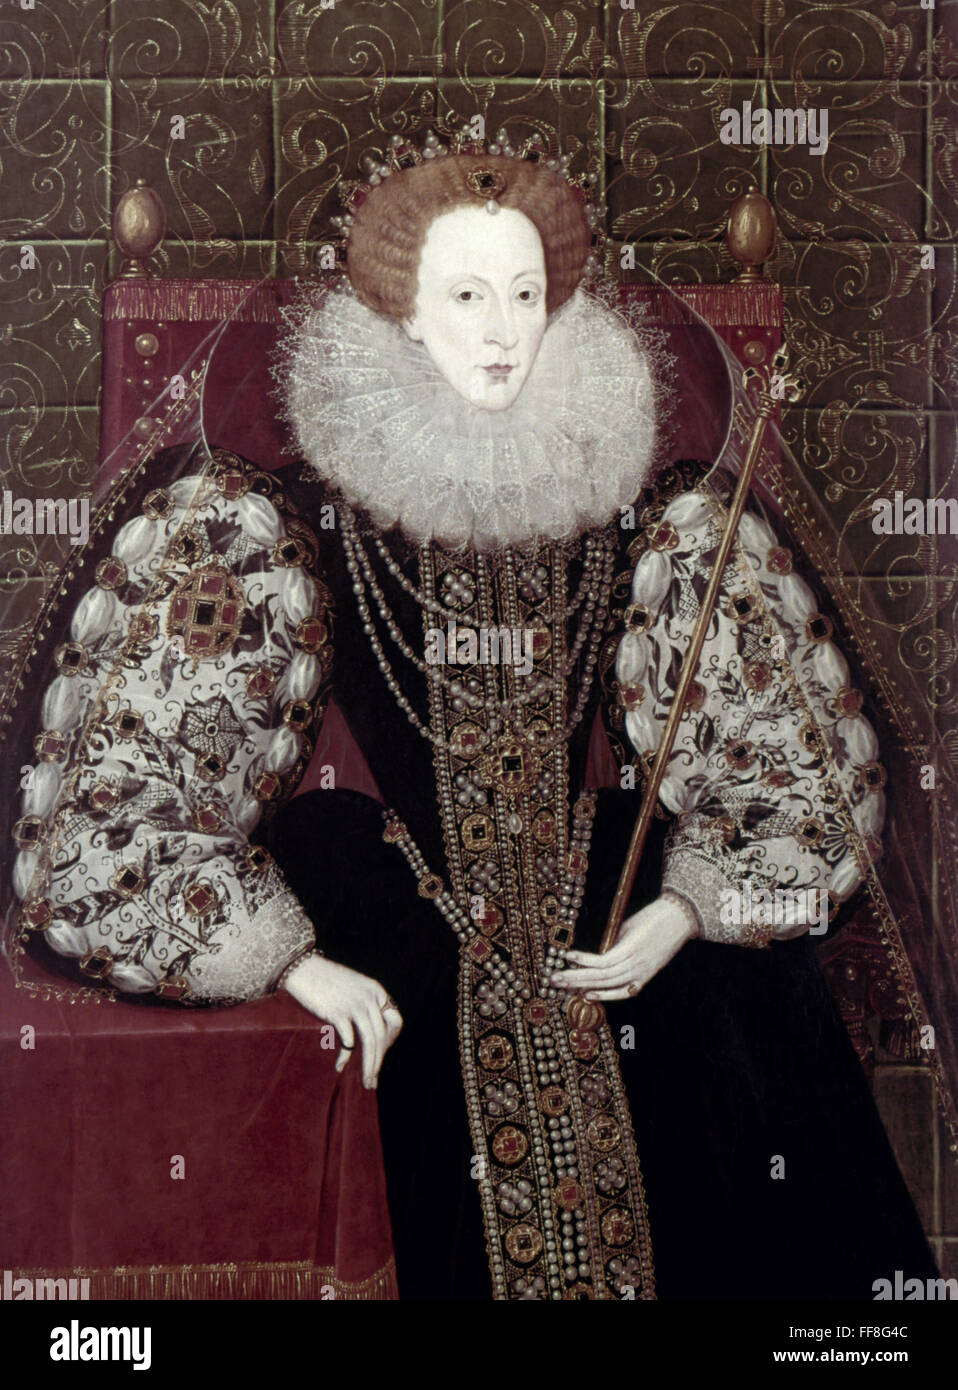 Queen Elizabeth I N1533 1603 Queen Of England And Ireland 1558